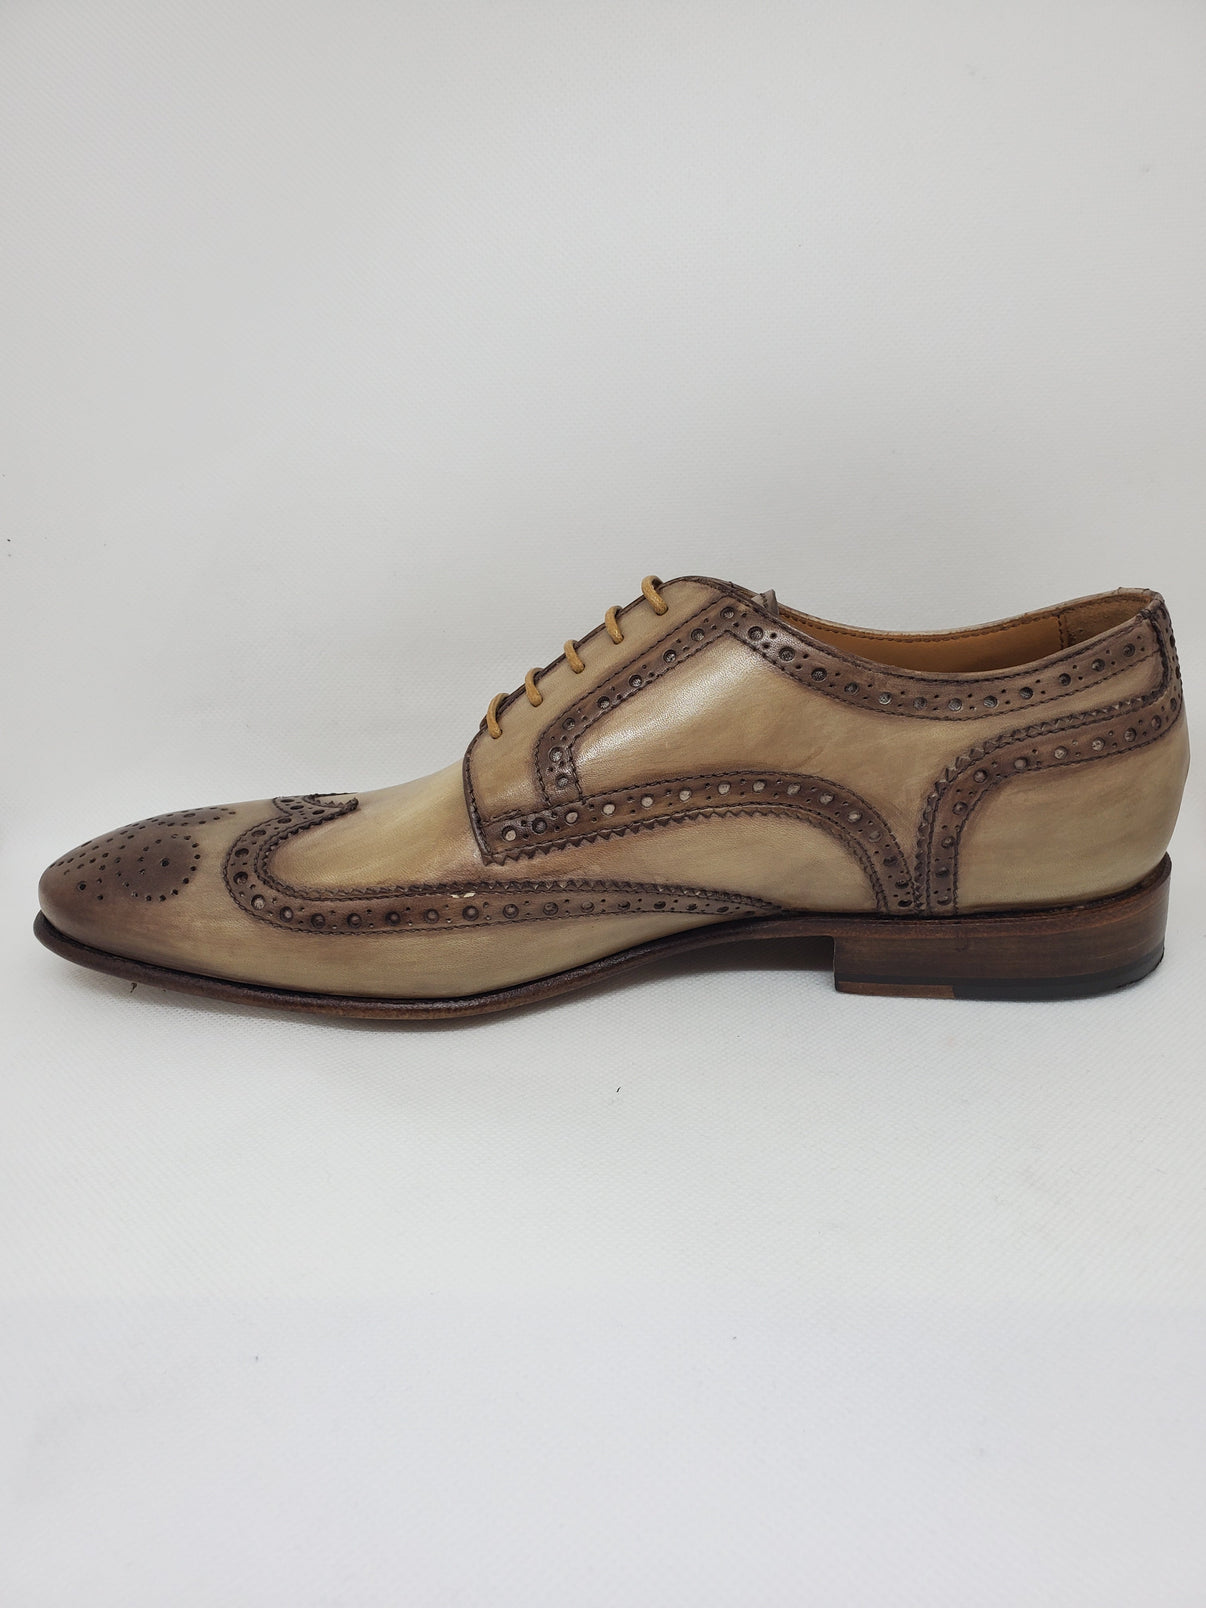 Classic Derby Shoe - Antiqued Crust Calfskin Leather | Sartoria Dei ...